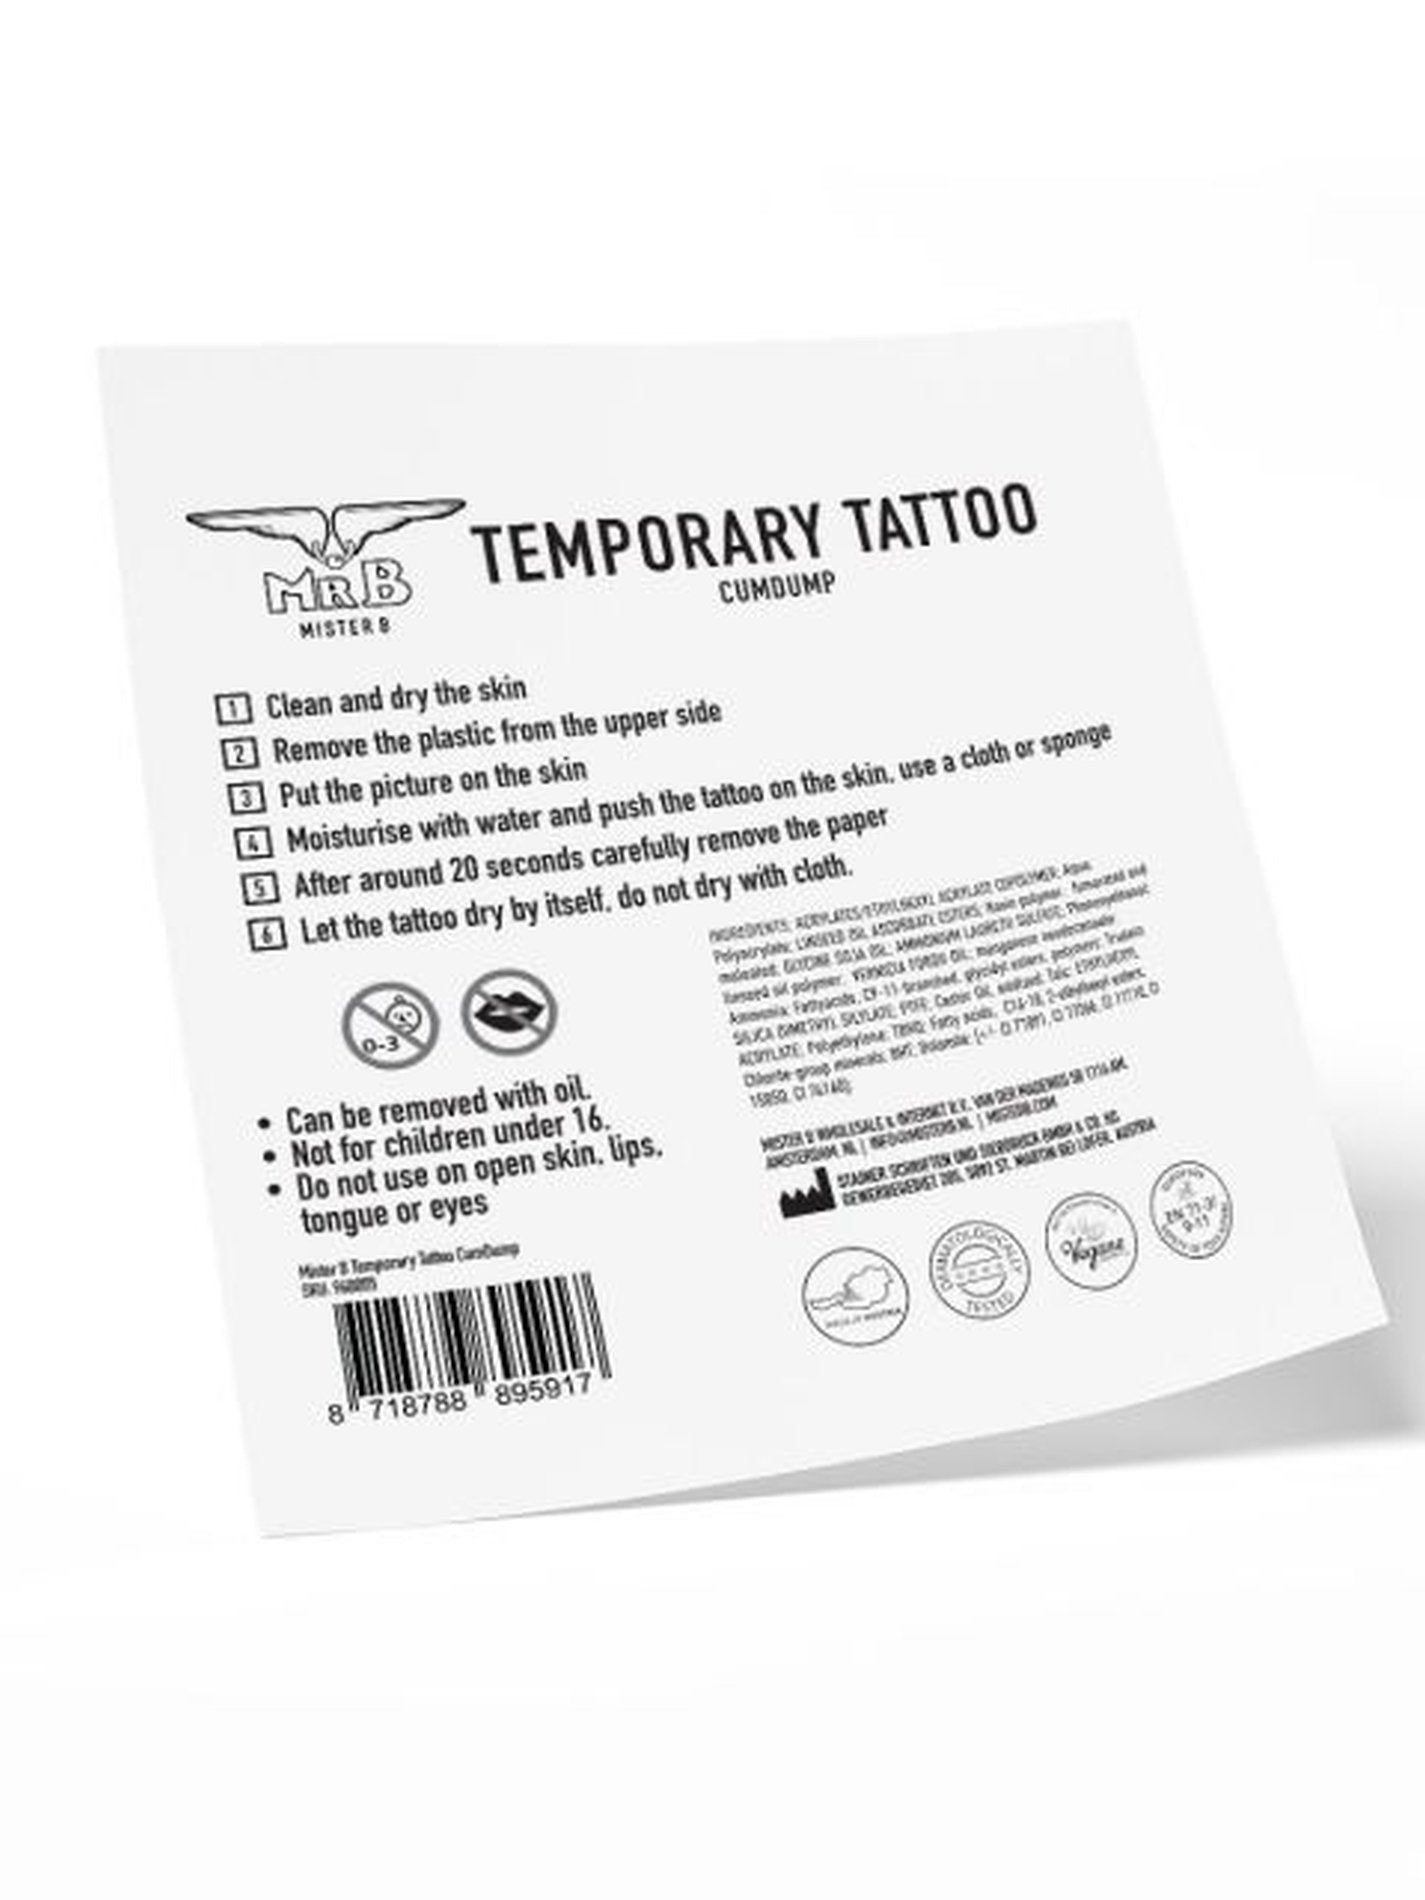 temporäres tattoo von mister b anleitung zum aufbringen auf der haut und zum entfernen